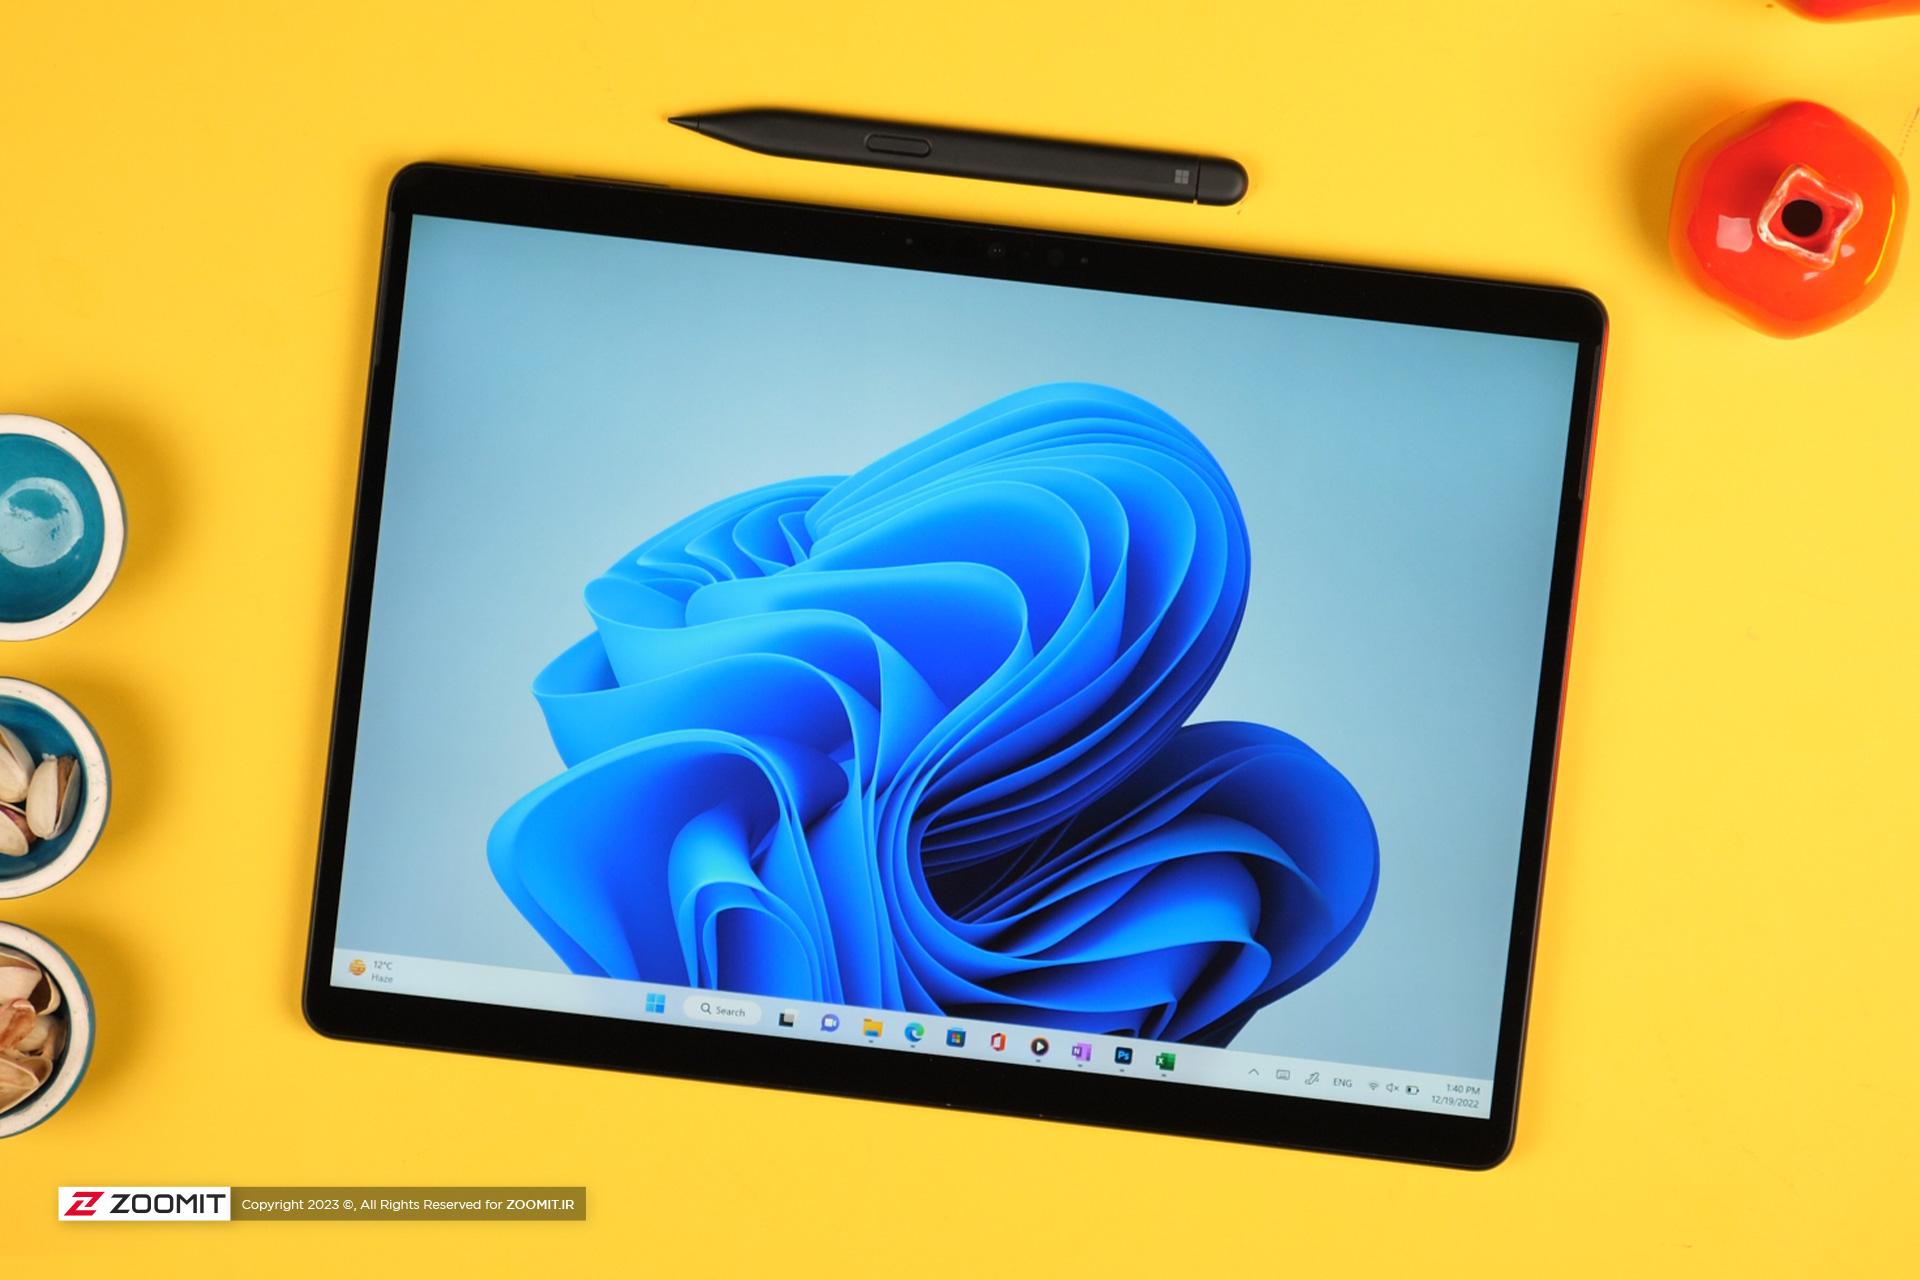 لپ تاپ سرفیس پرو 9 مایکروسافت / Microsoft Surface Pro 9